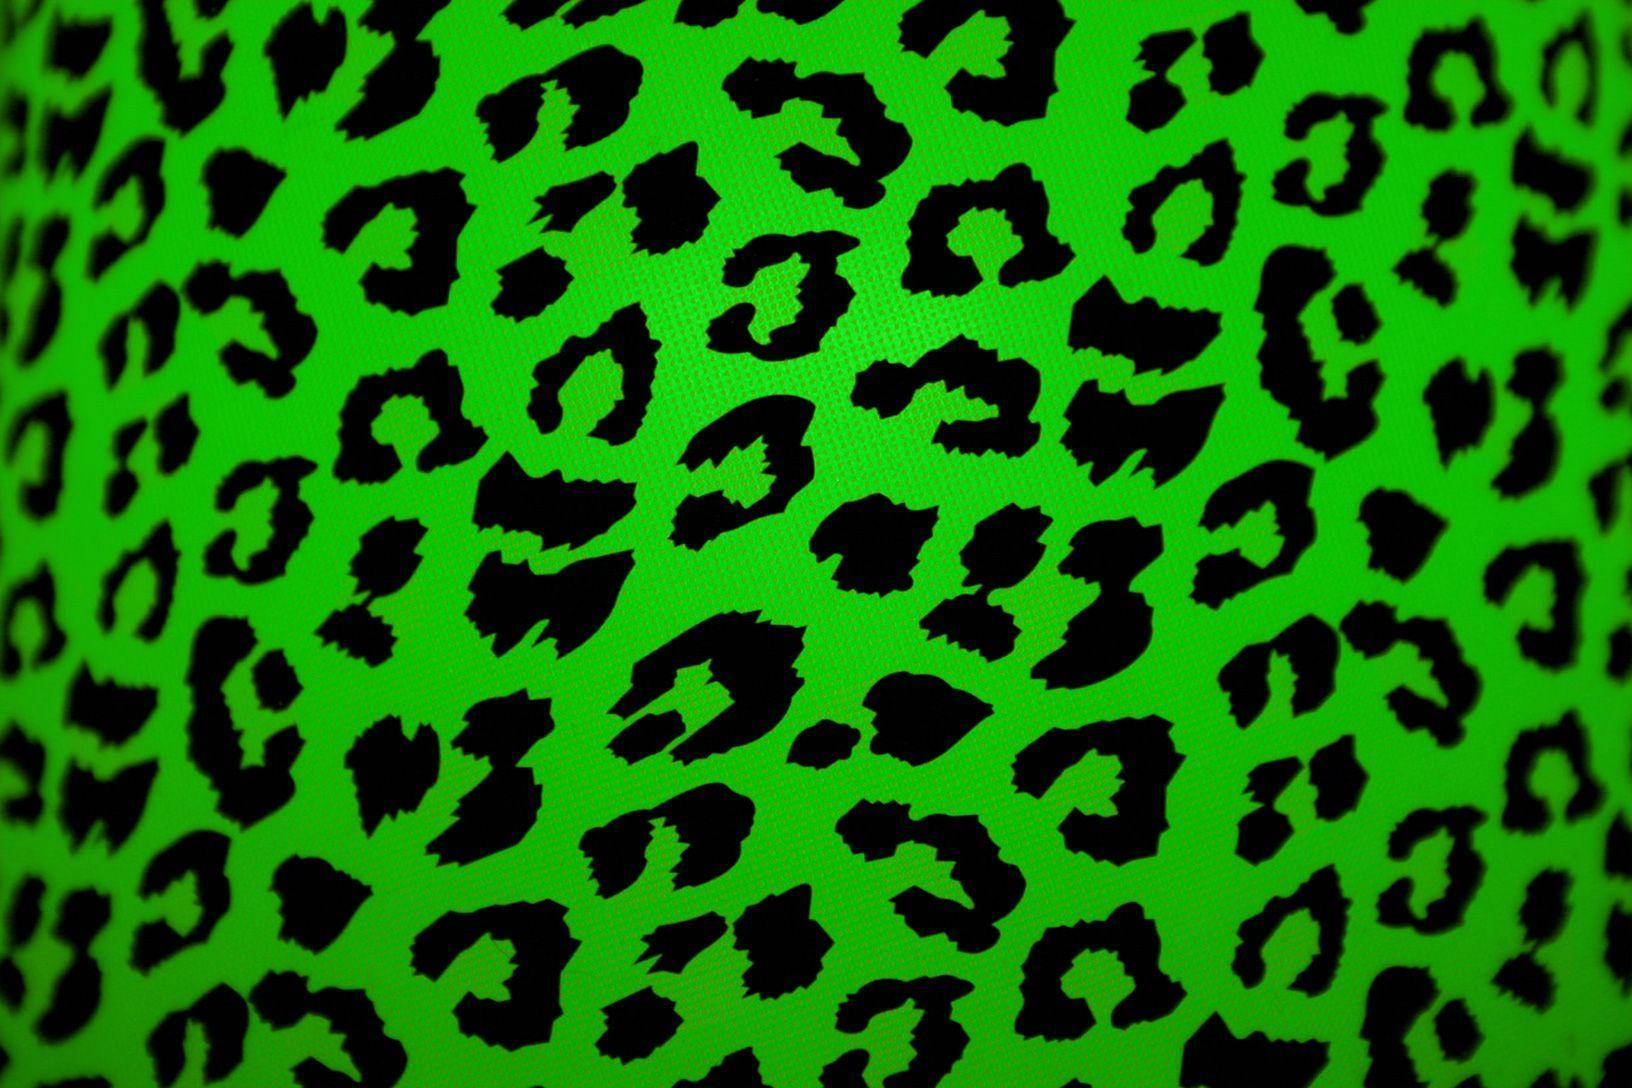 green giraffe print wallpaper